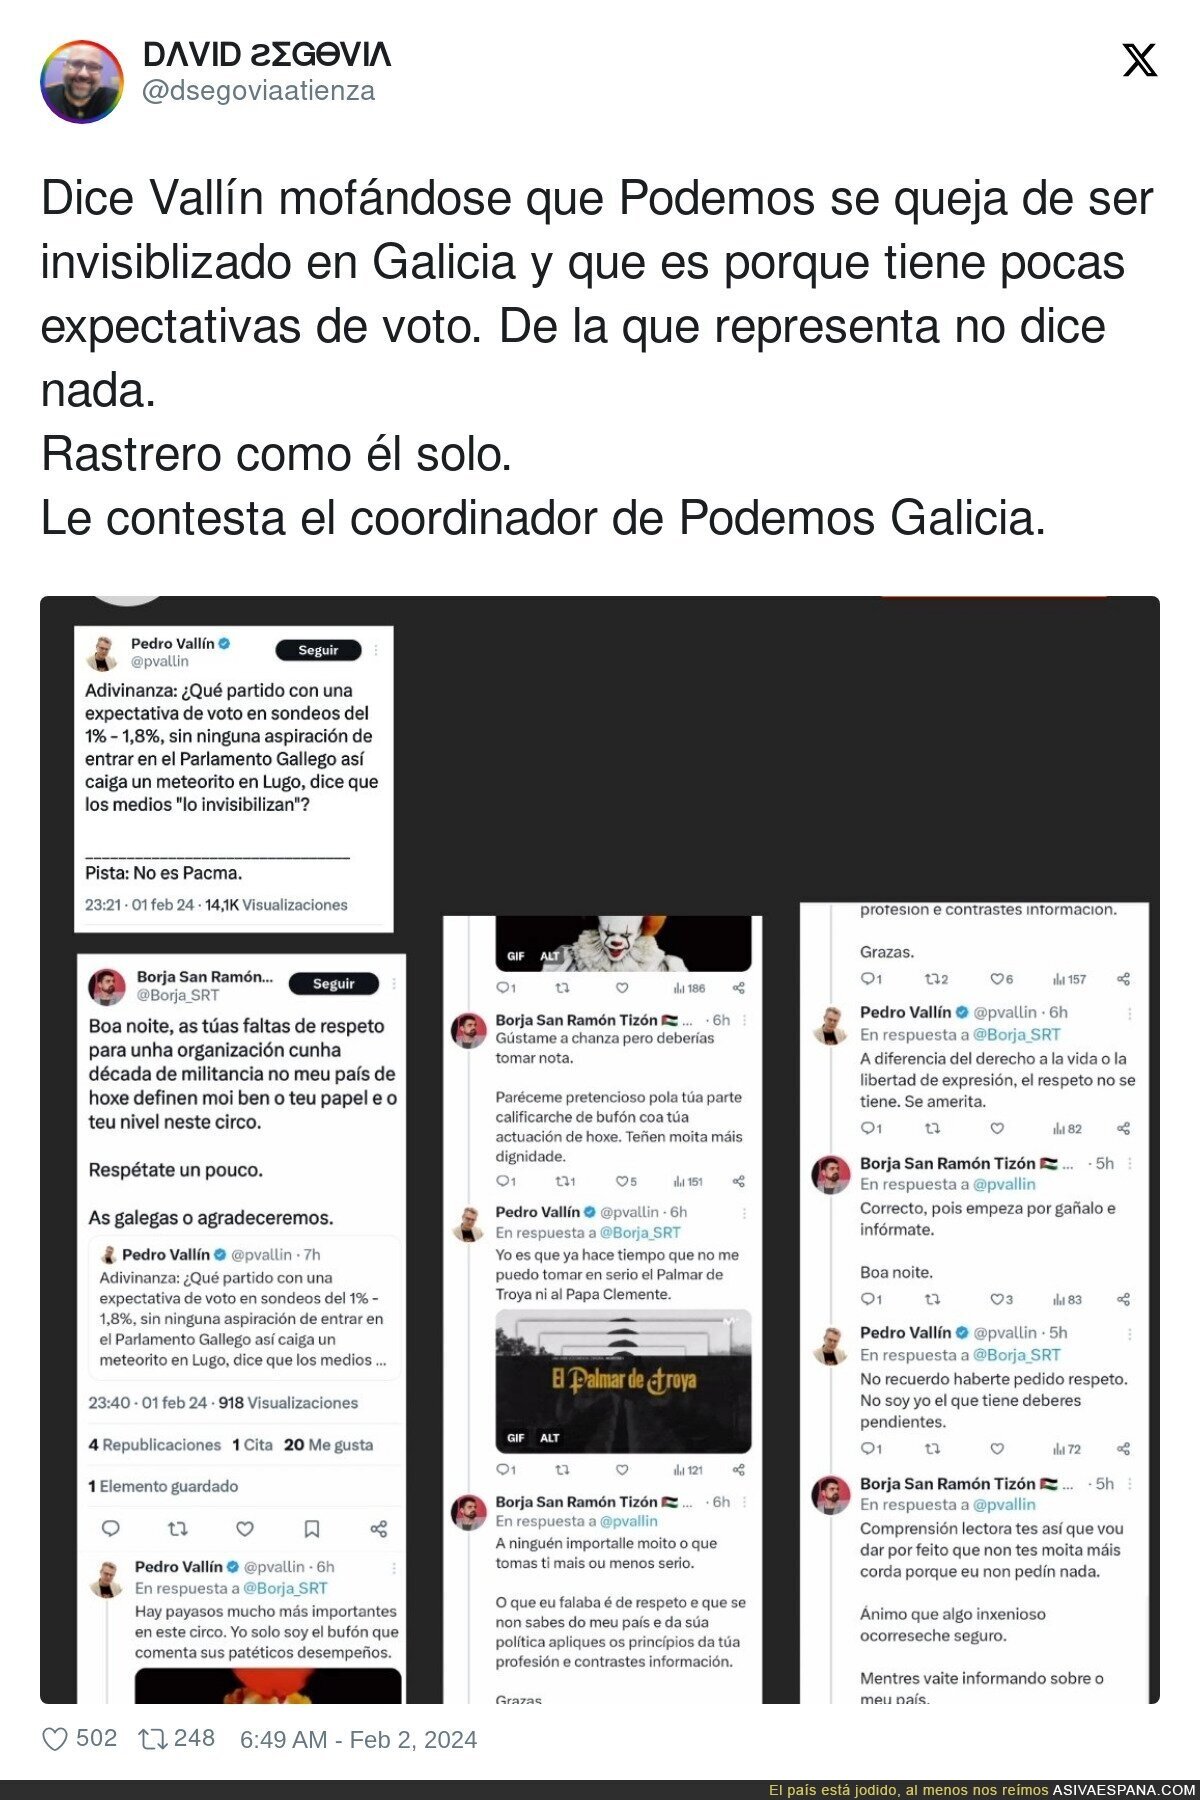 Está caliente la cosa en las elecciones gallegas